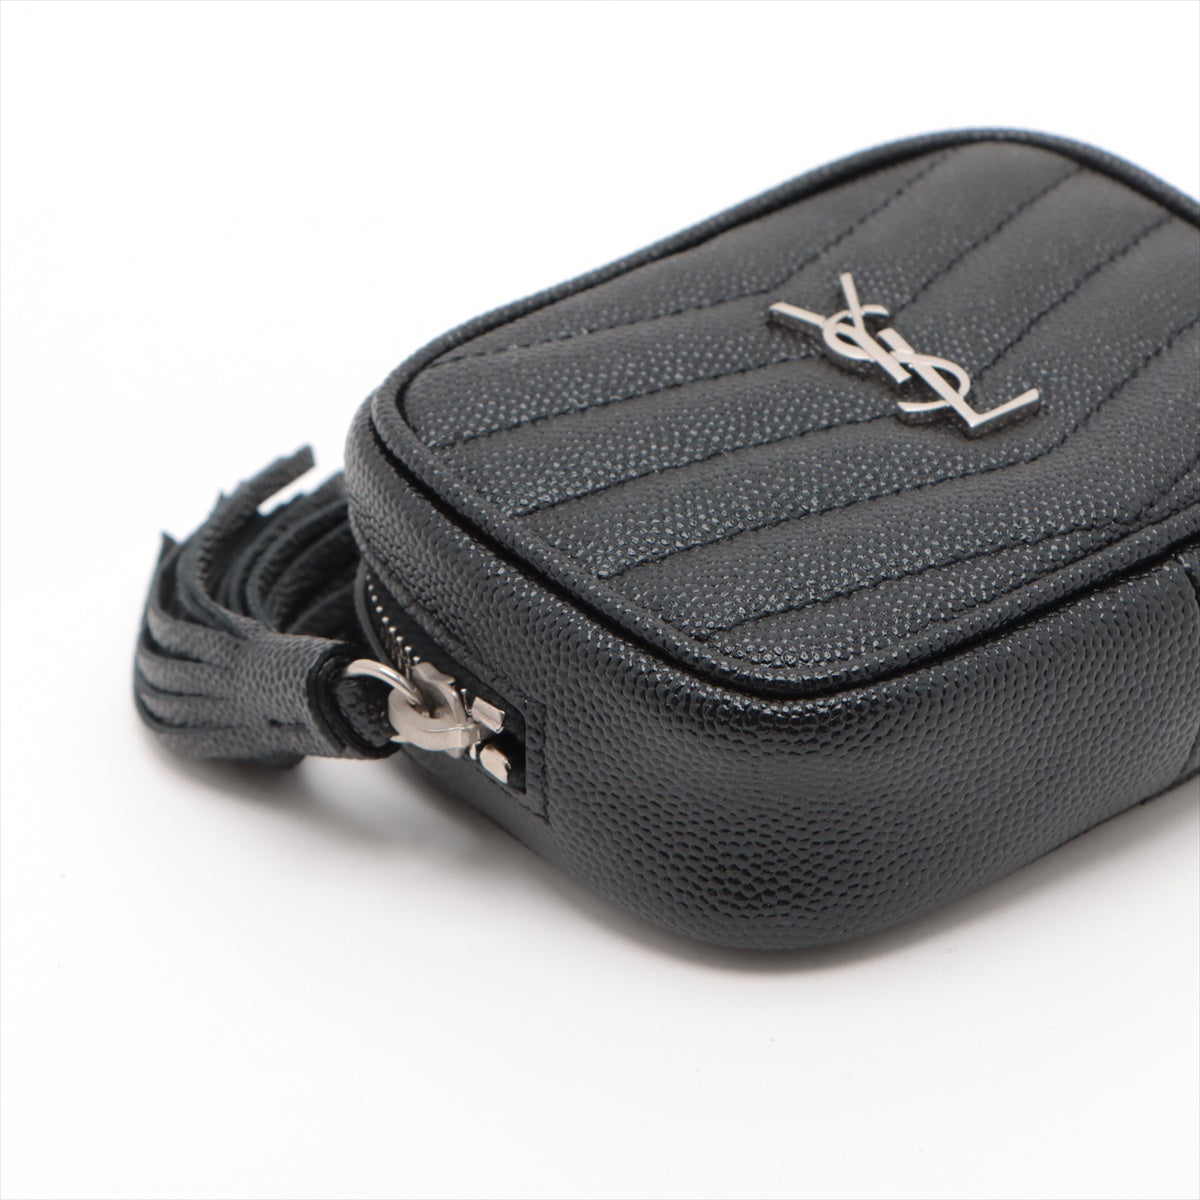 Saint Laurent Paris Baby Roux Leather Chain shoulder bag Black 657495